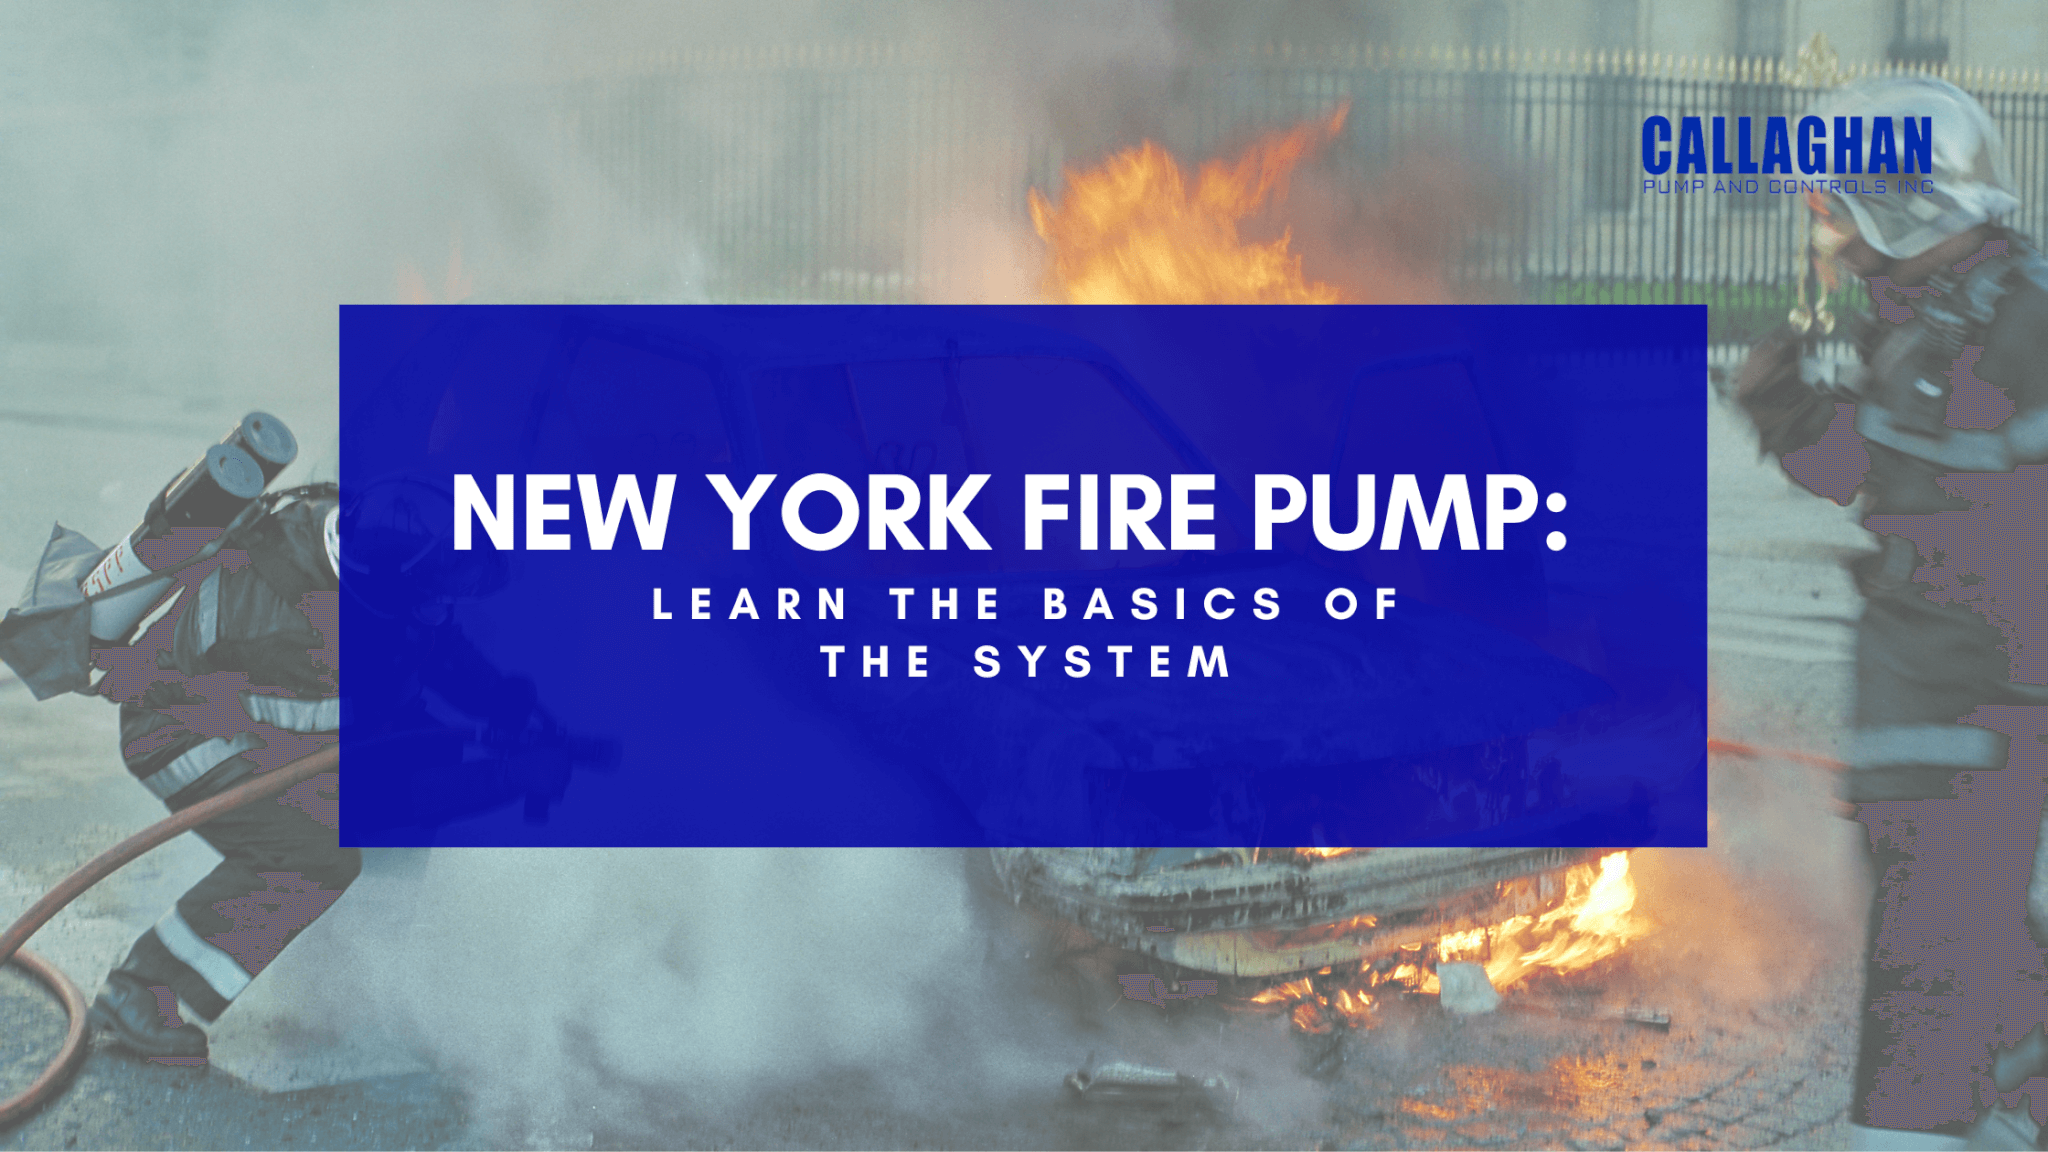 New York Fire Pumps